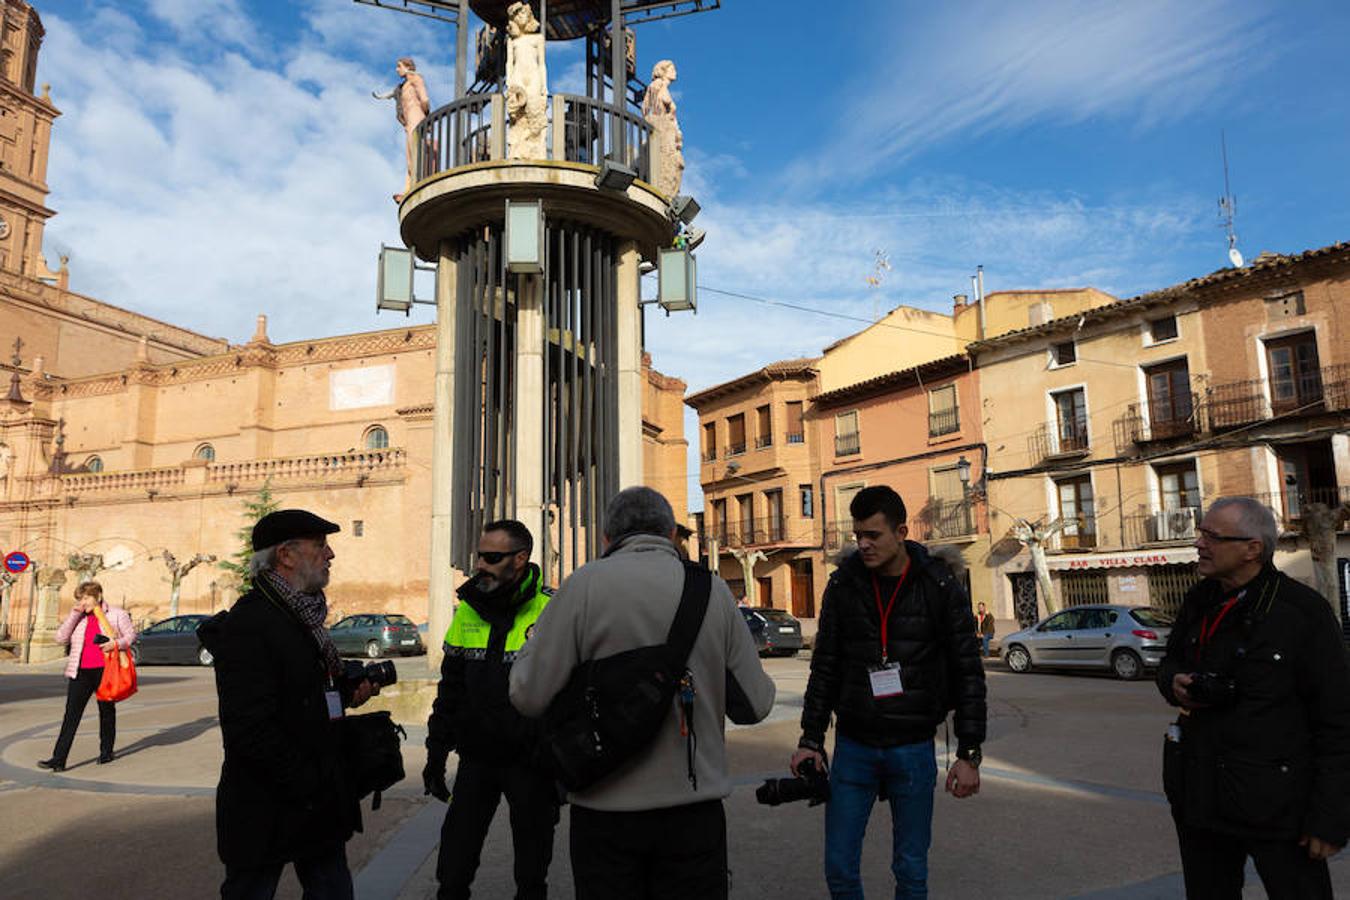 El sol y el buen tiempo se aliaron para hacer «la fotografía perfecta» en el VIII Rally Fotográfico del Rioja, que ayer reunió a 95 participantes y recorrió rincones y bodegas de Aldeanueva, Azagra y Navarrete.